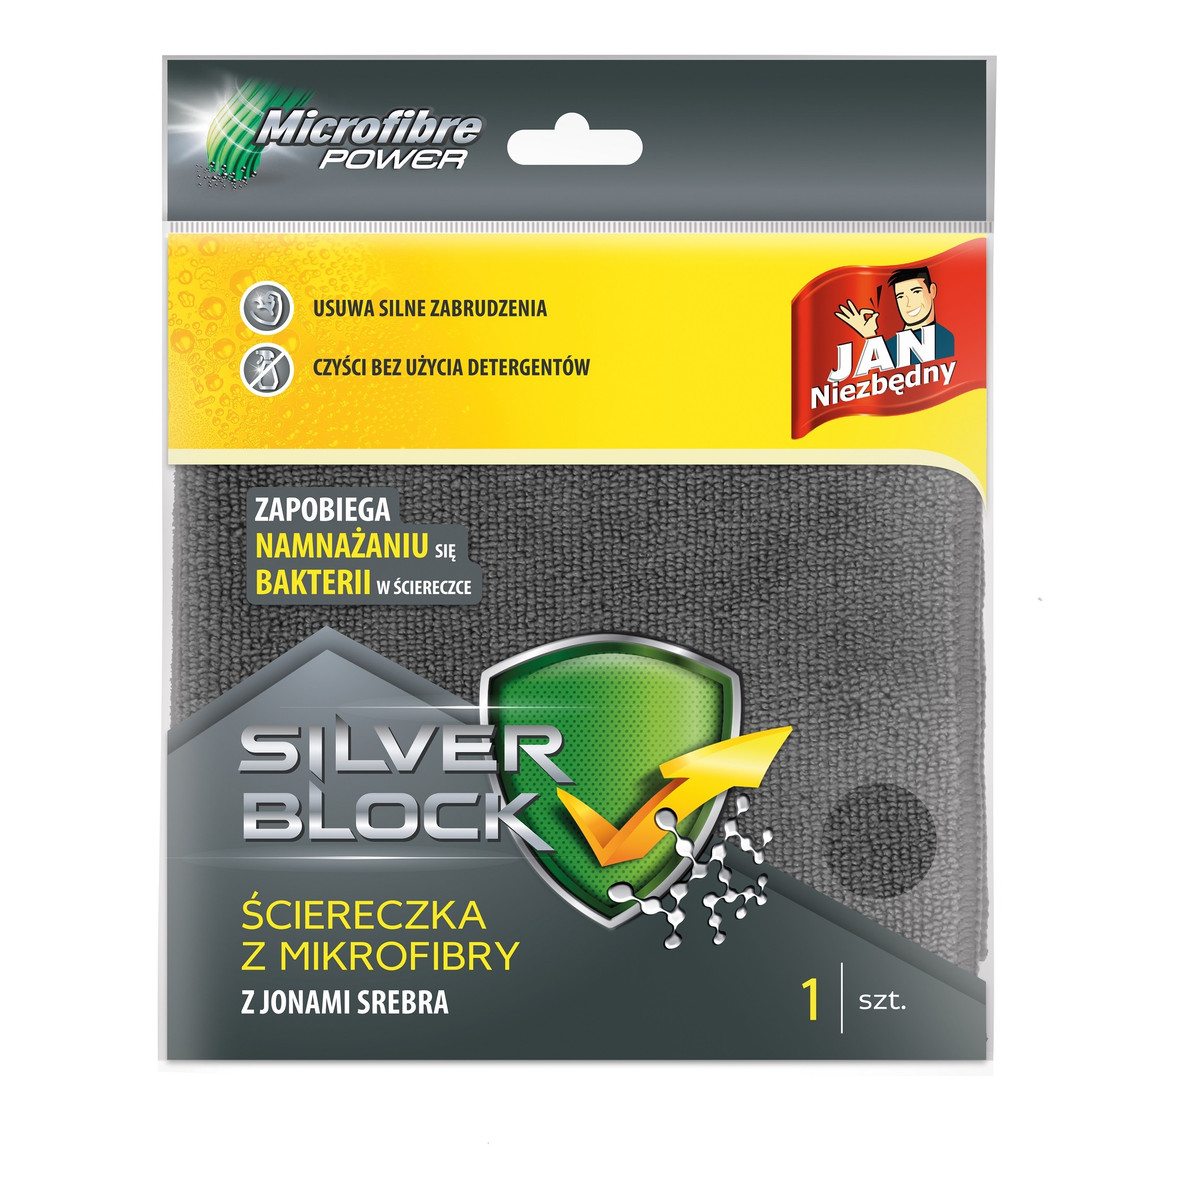 Jan Niezbędny Silver Block Ściereczka z mikrofibry z jonami srebra 1 szt.